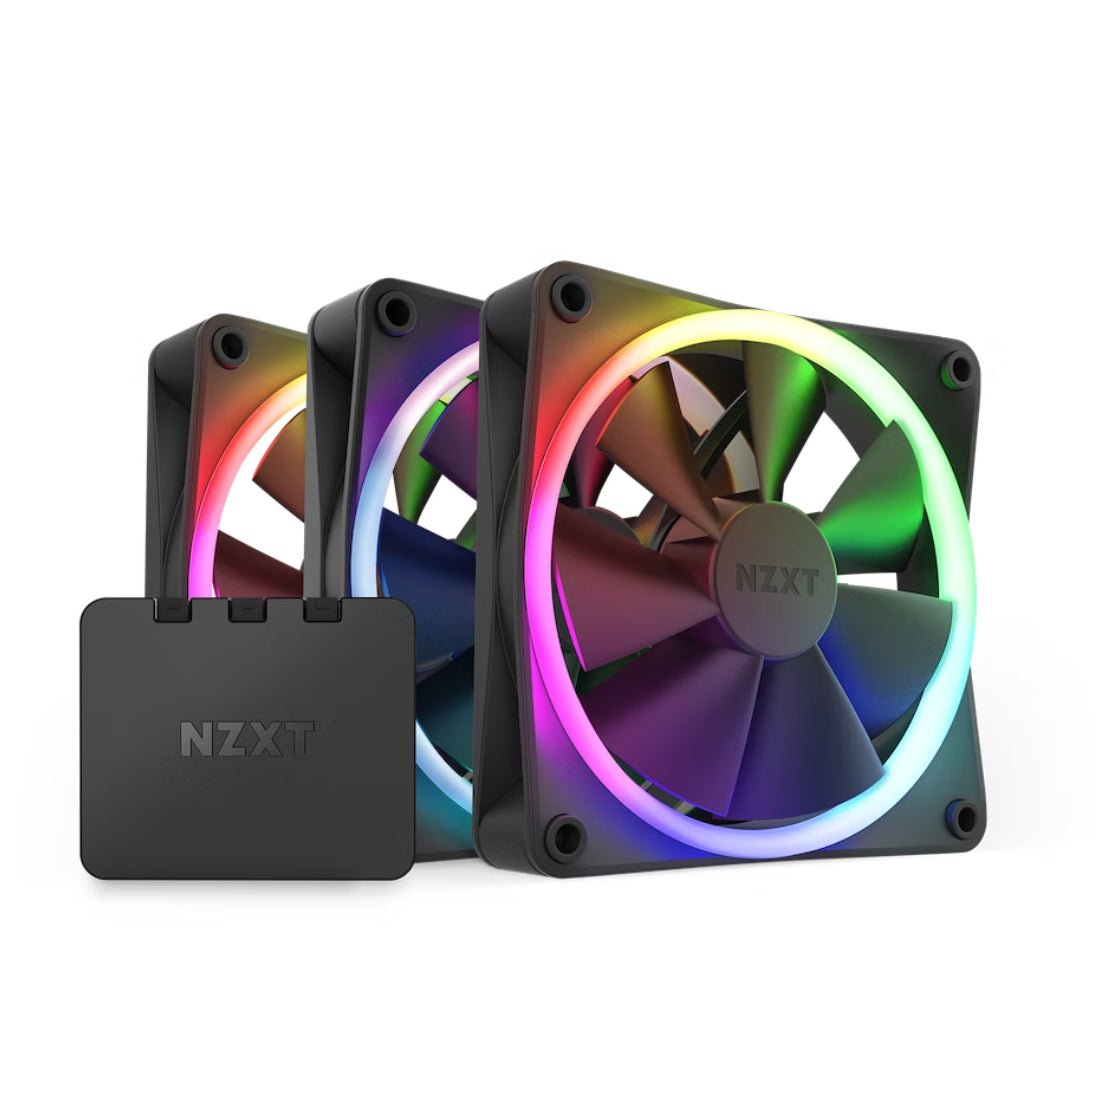 NZXT F120 Triple 120mm RGB Fans & Controller - Black - مروحة تبريد - Store 974 | ستور ٩٧٤